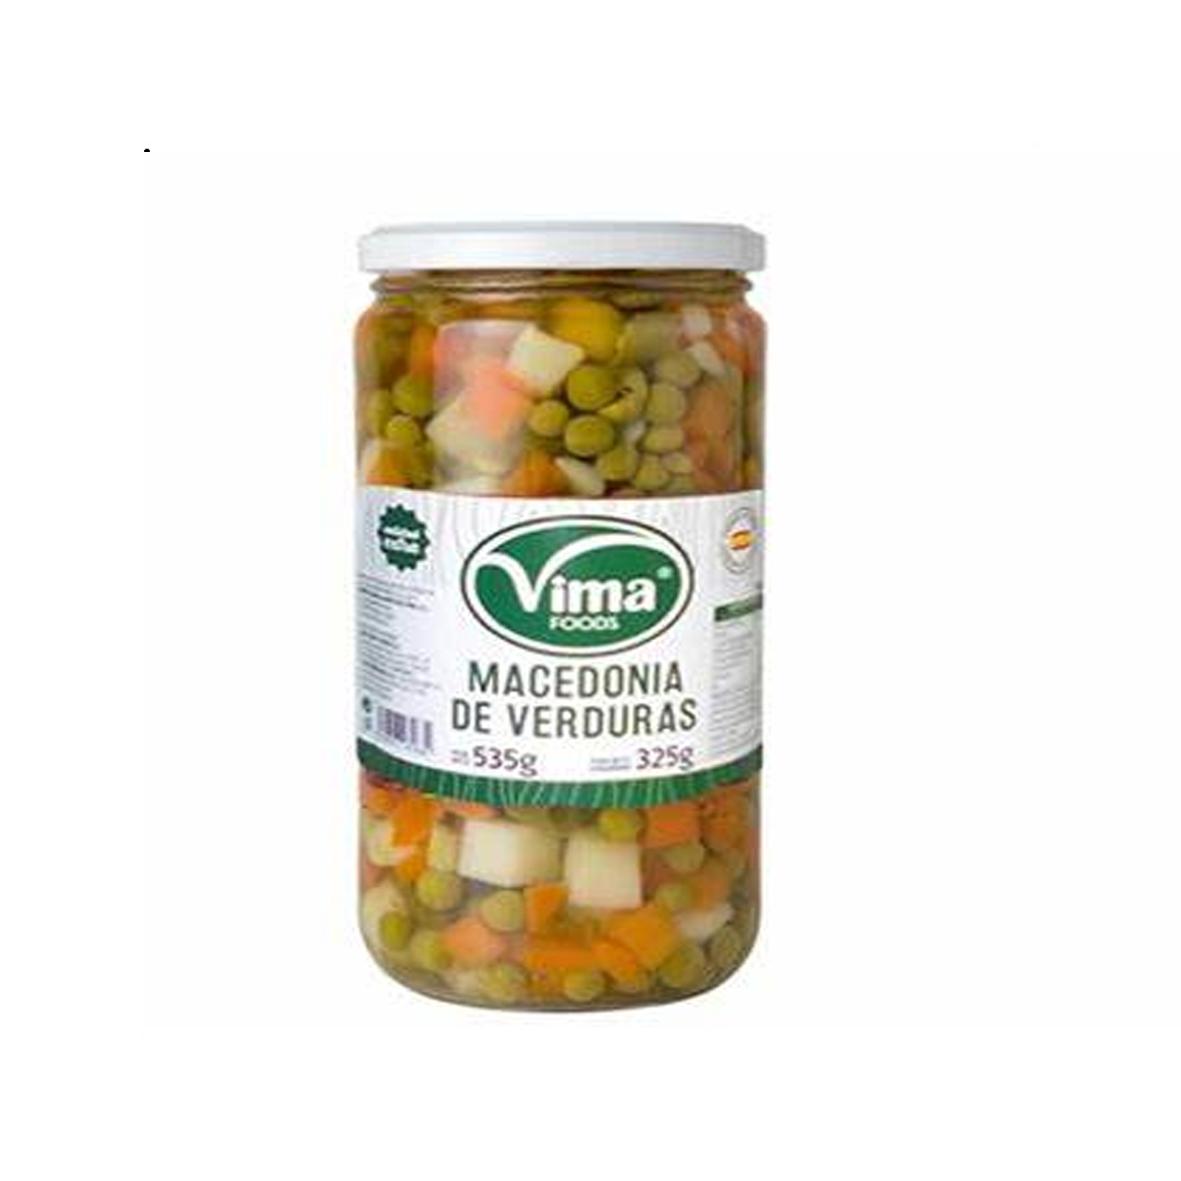 Macedonia de Verduras Vima Foods (535 g / 18.8 oz)